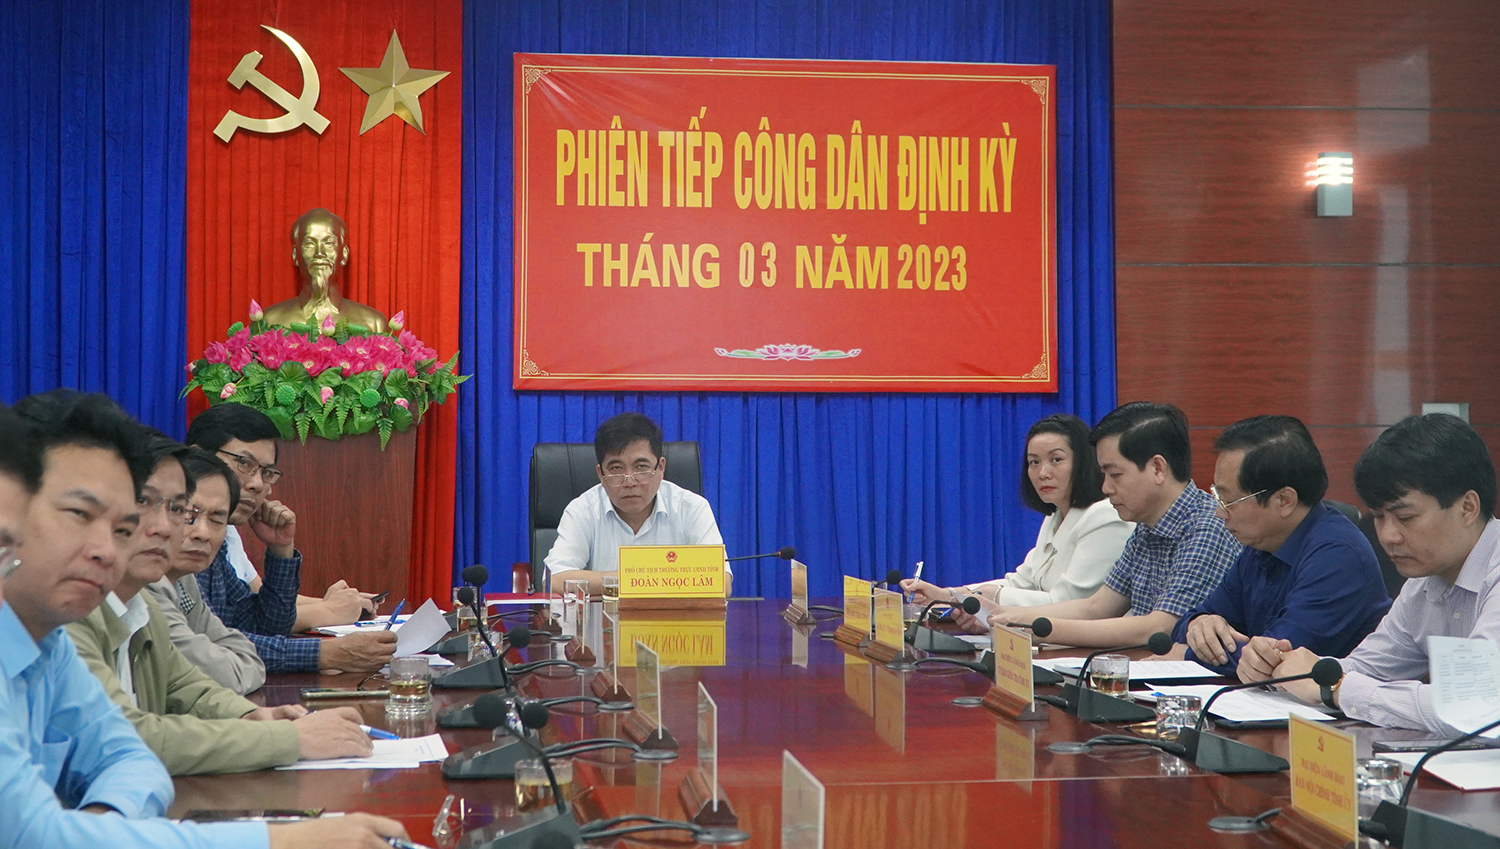 Đồng chí Đoàn Ngọc Lâm, Ủy viên Ban Thường vụ, Phó Chủ tịch Thường trực UBND tỉnh chủ trì phiên tiếp công dân của UBND tỉnh